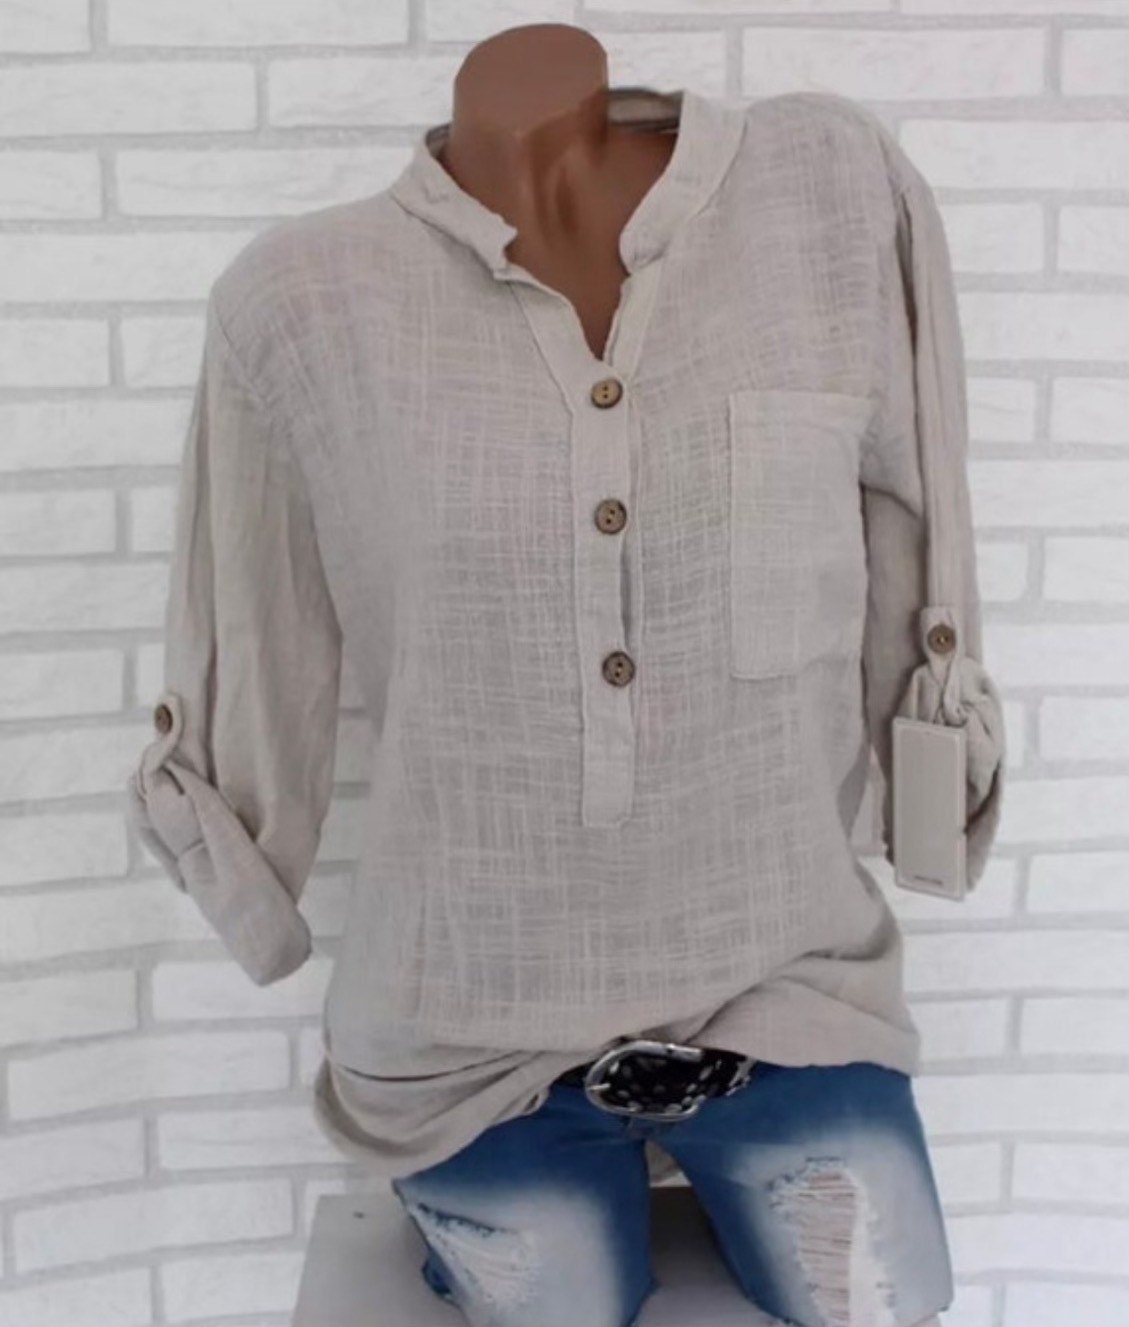 Women Linen Shirt / White Shirts / Button Cardigan Top / - Etsy UK